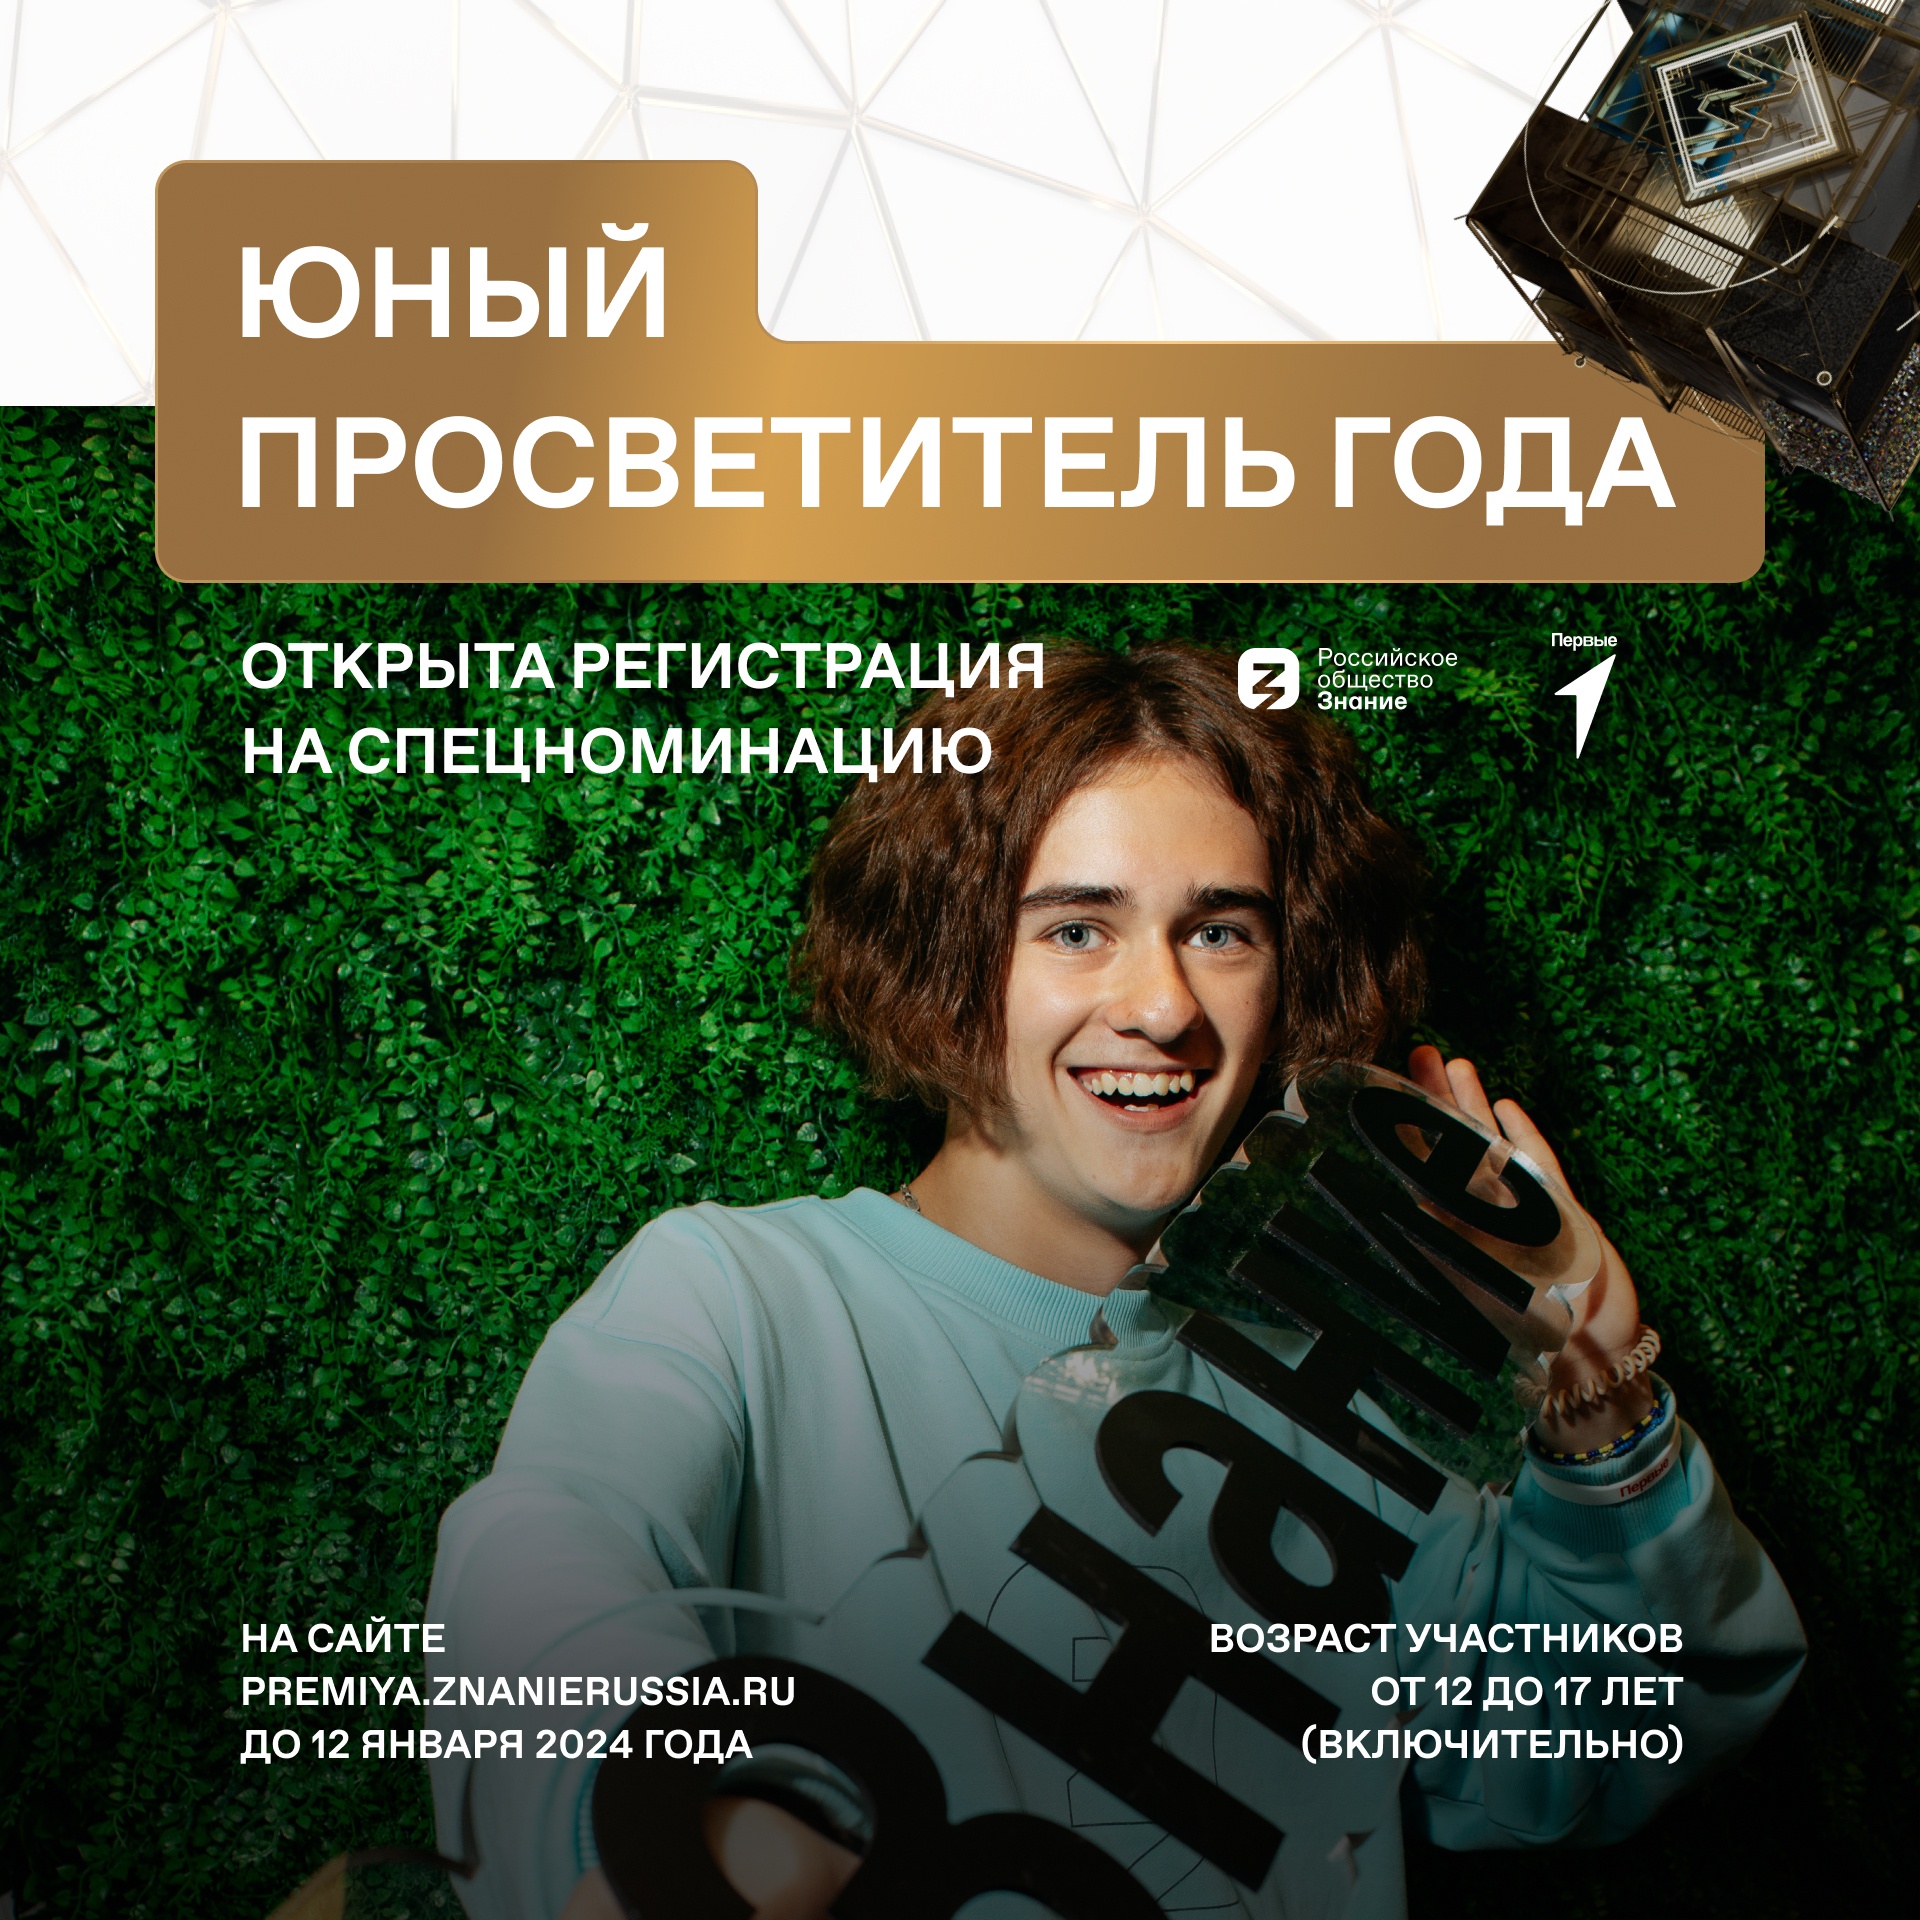 Российское общество «Знание» и Движение Первых в поисках юных просветителей!